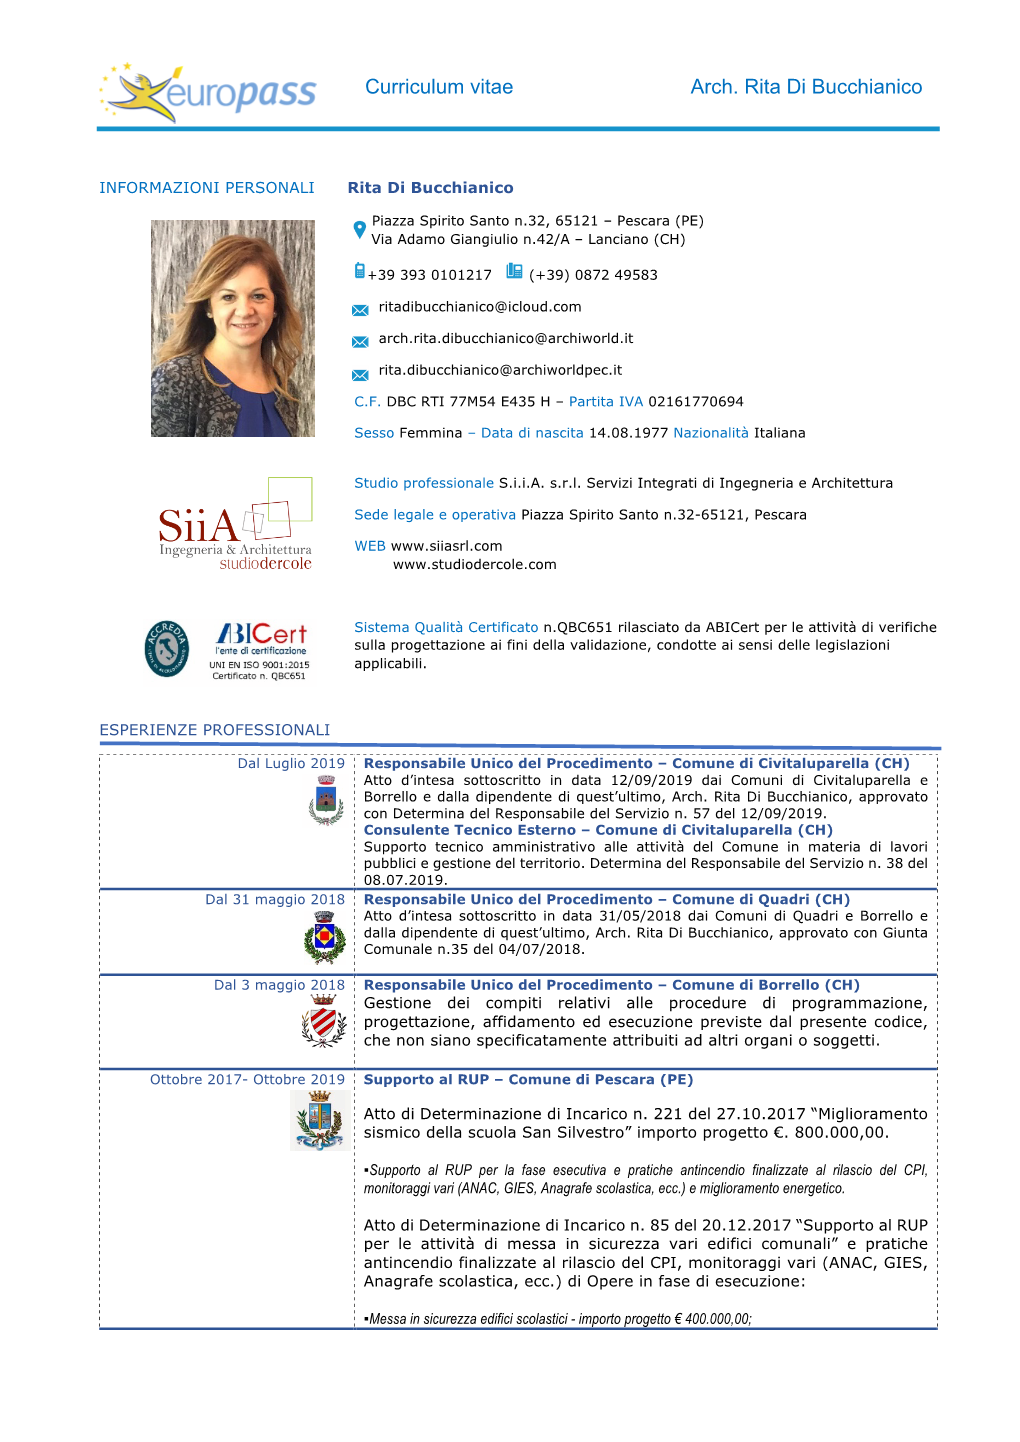 Curriculum Vitae Arch. Rita Di Bucchianico